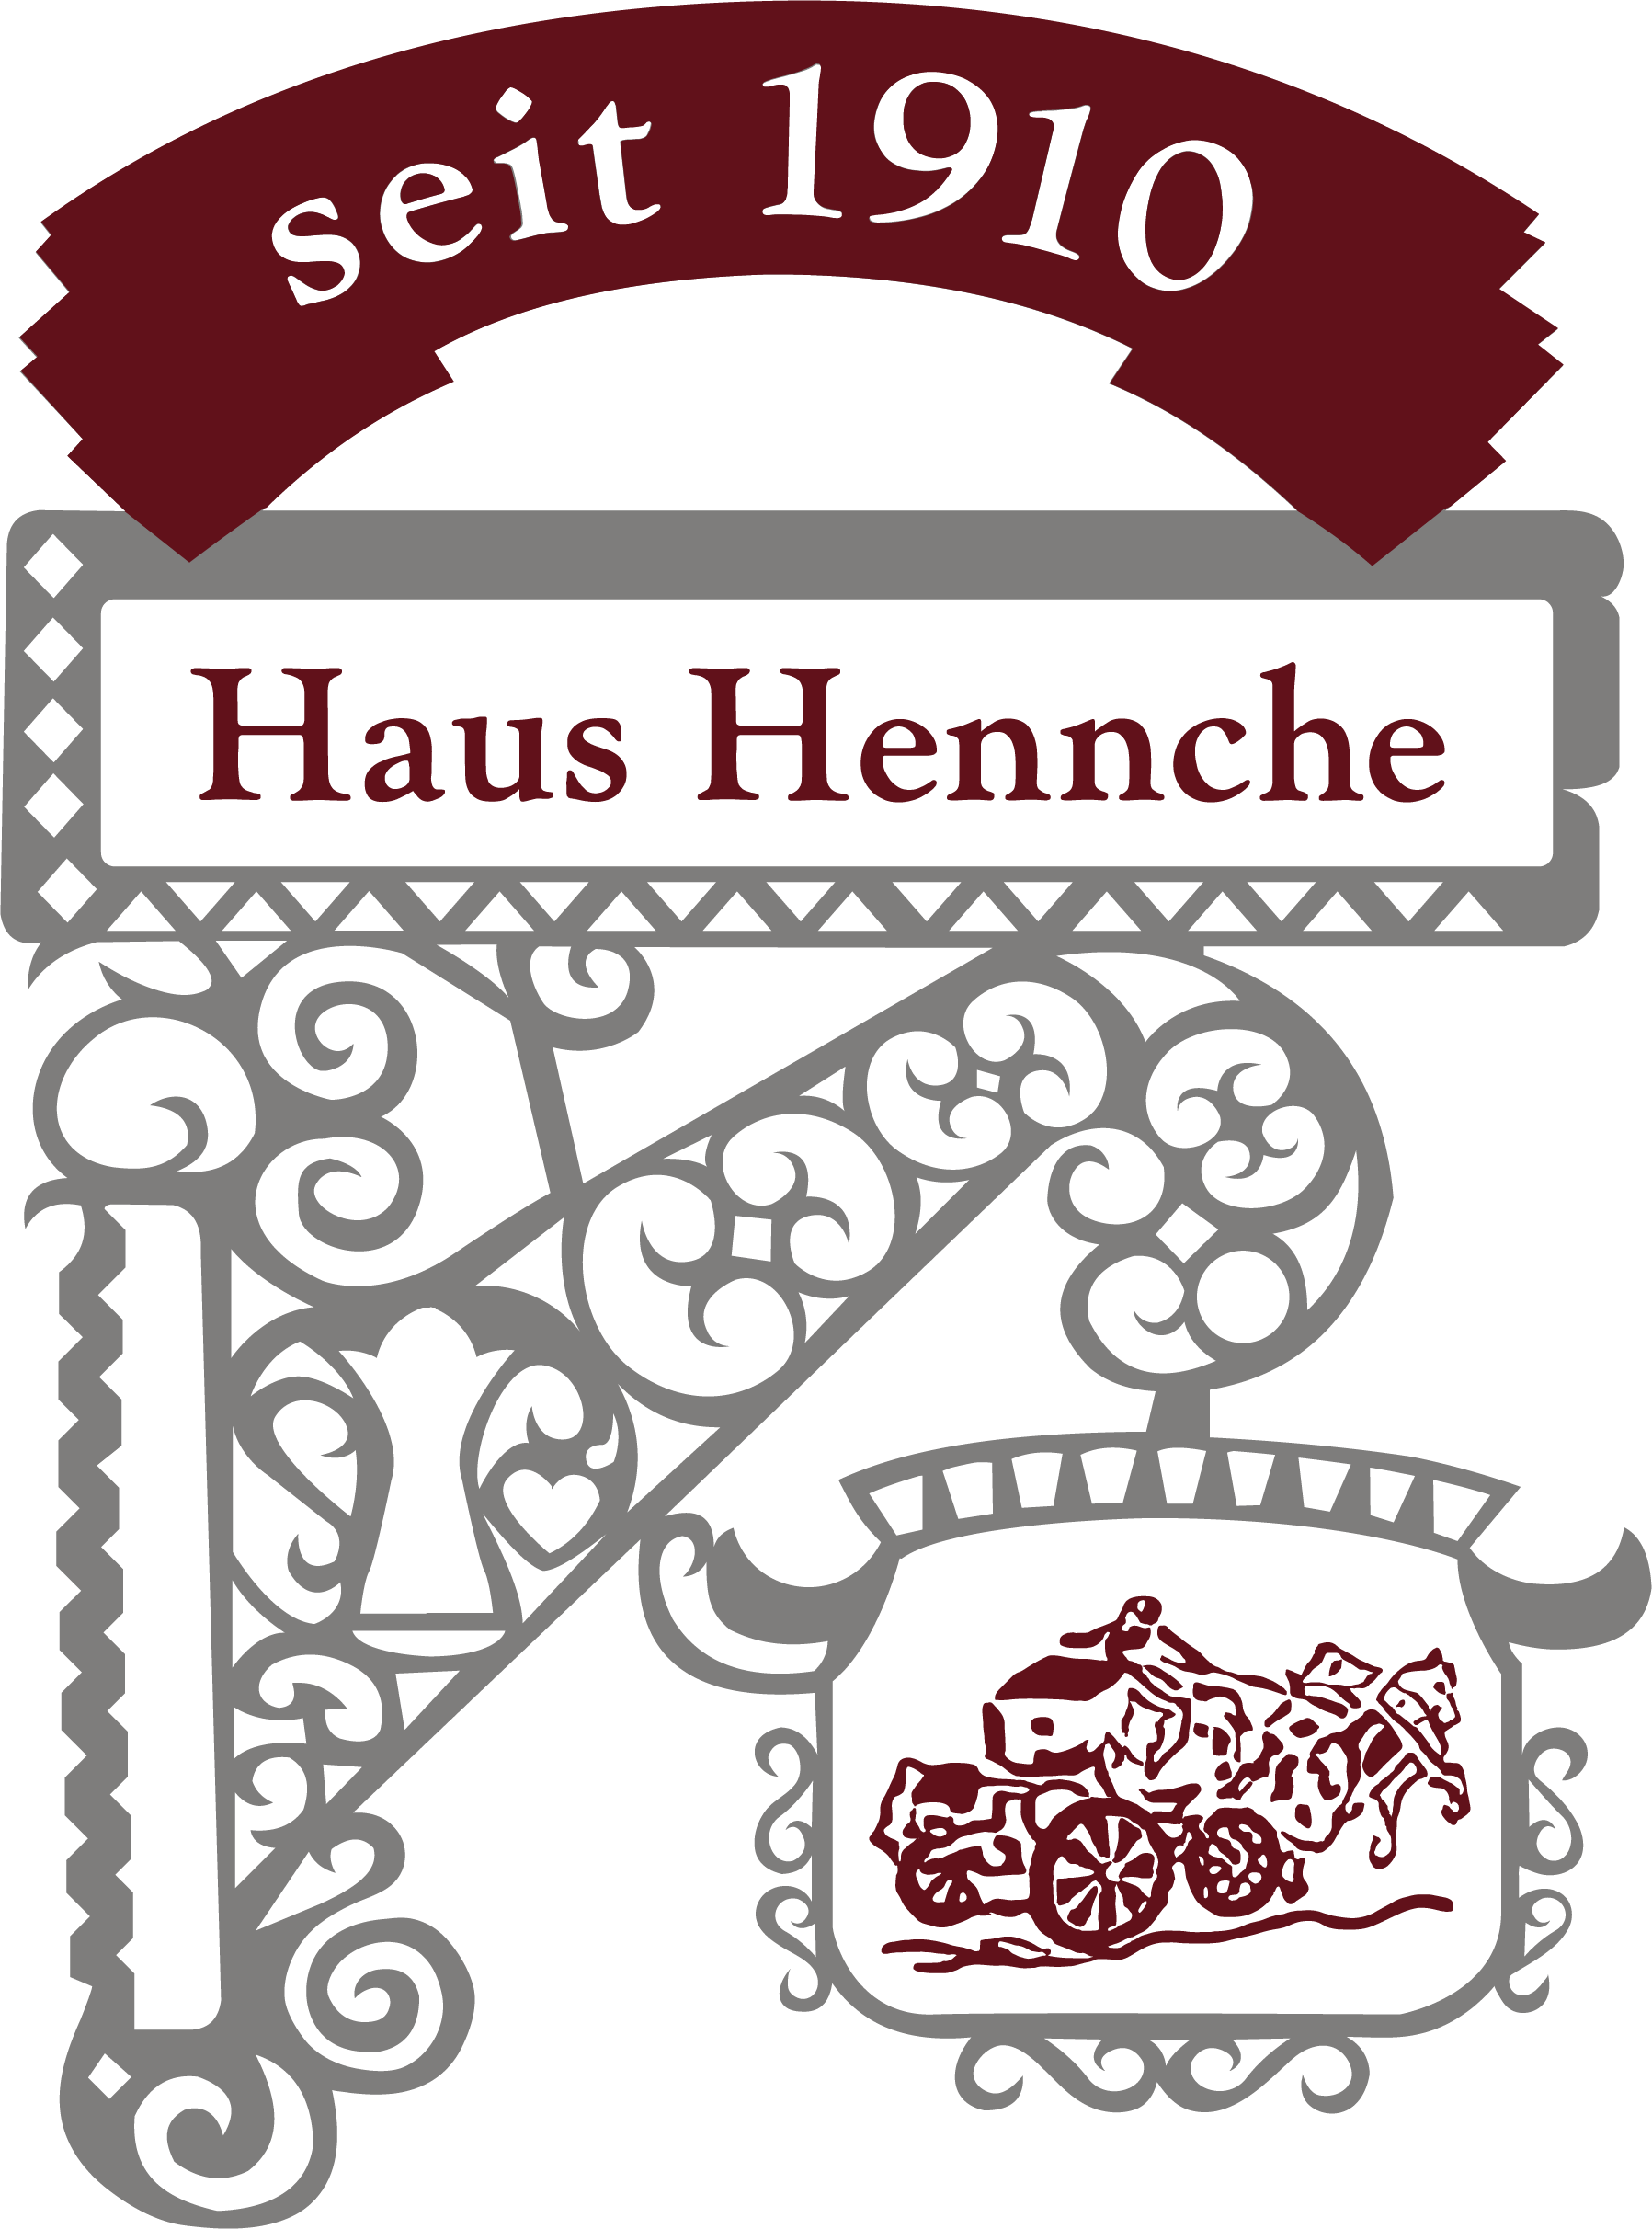 Haus Hennche